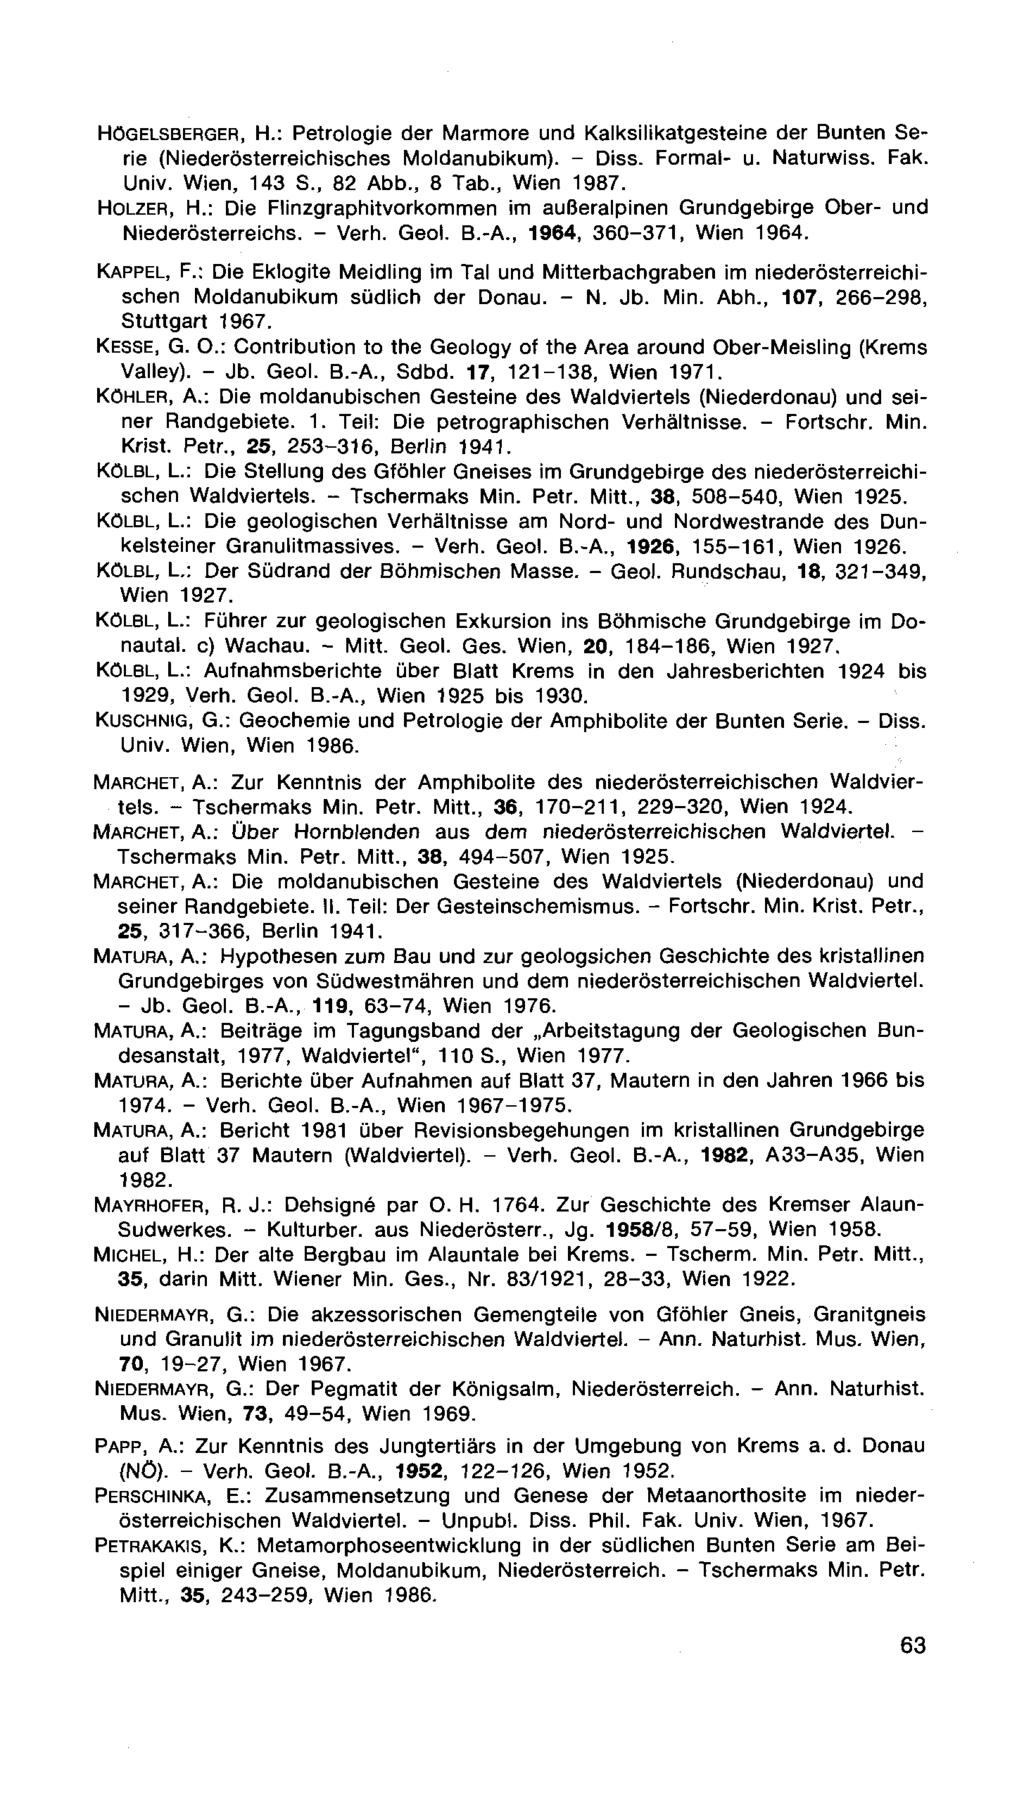 HÖGELSBERGER, H.: Petrologie der Marmore und Kalksilikatgesteine der Bunten Serie (Niederösterreichisches Moldanubikum). - Diss. Formal- u. Naturwiss. Fak. Univ. Wien, 143 S., 82 Abb., 8 Tab.